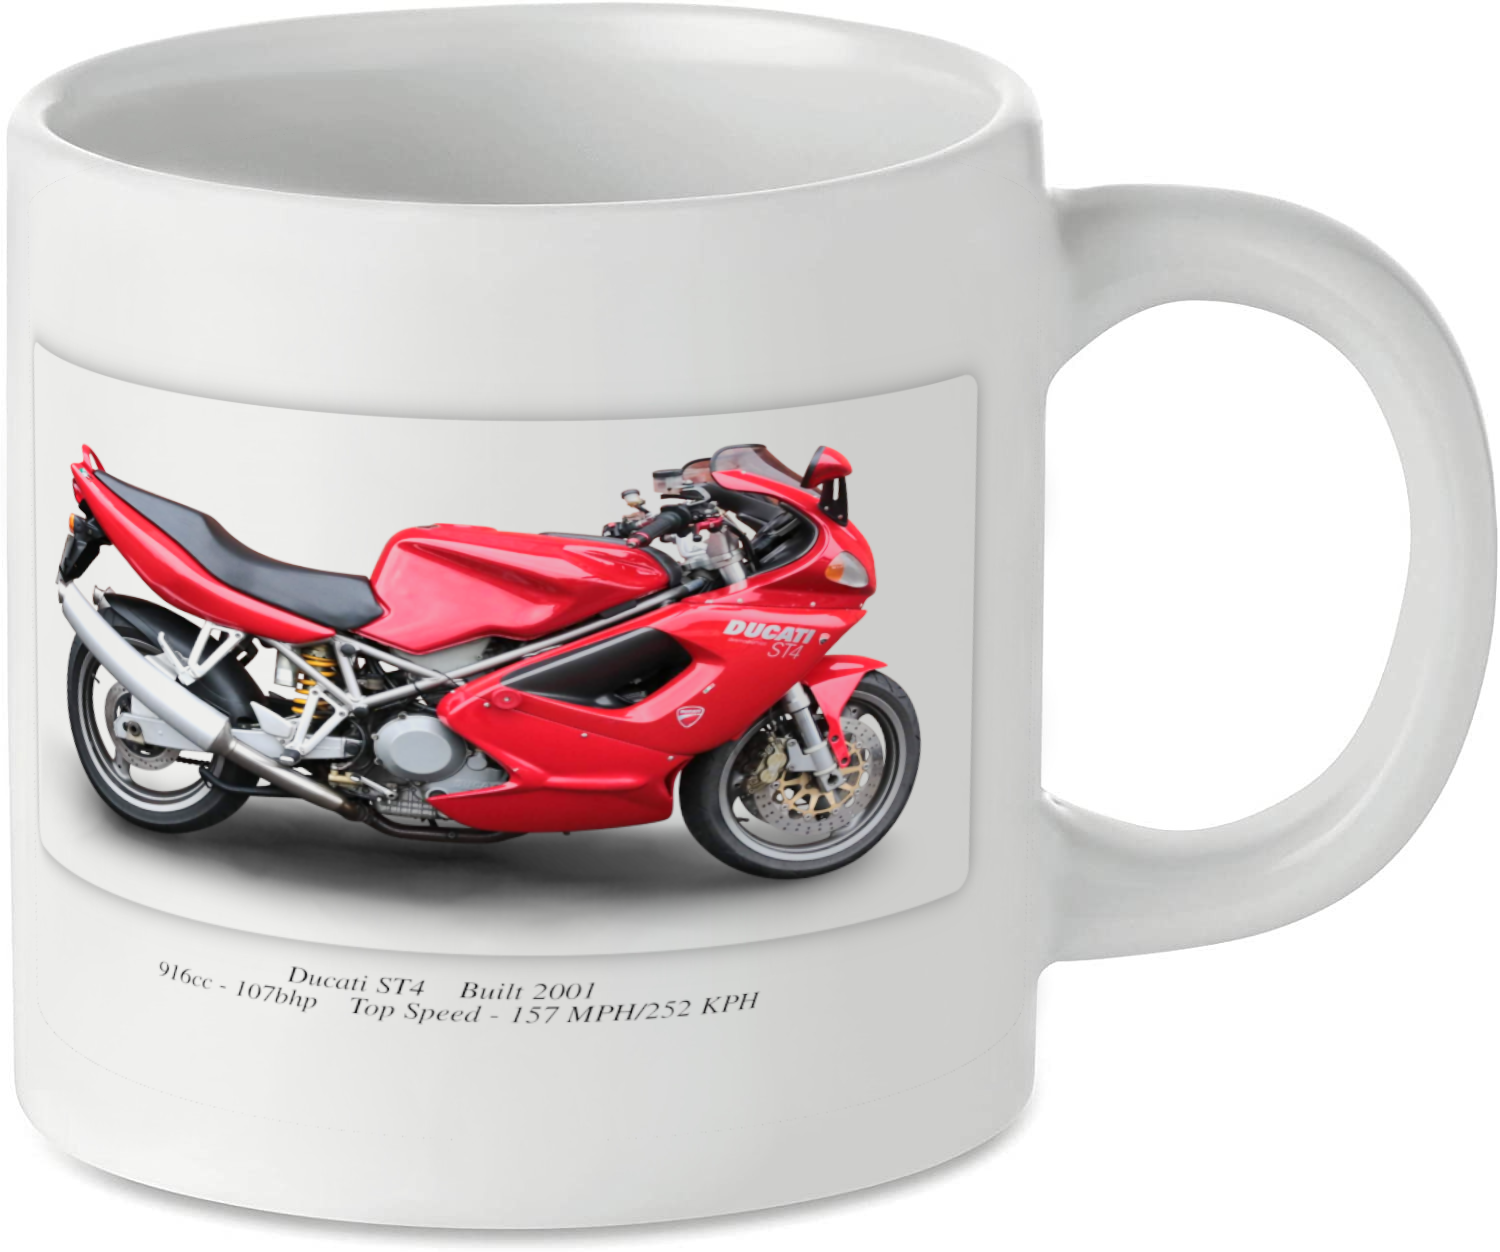 Ducati ST4 Motorcycle Motorbike Tea Coffee Mug Ideal Biker Gift Printed UK